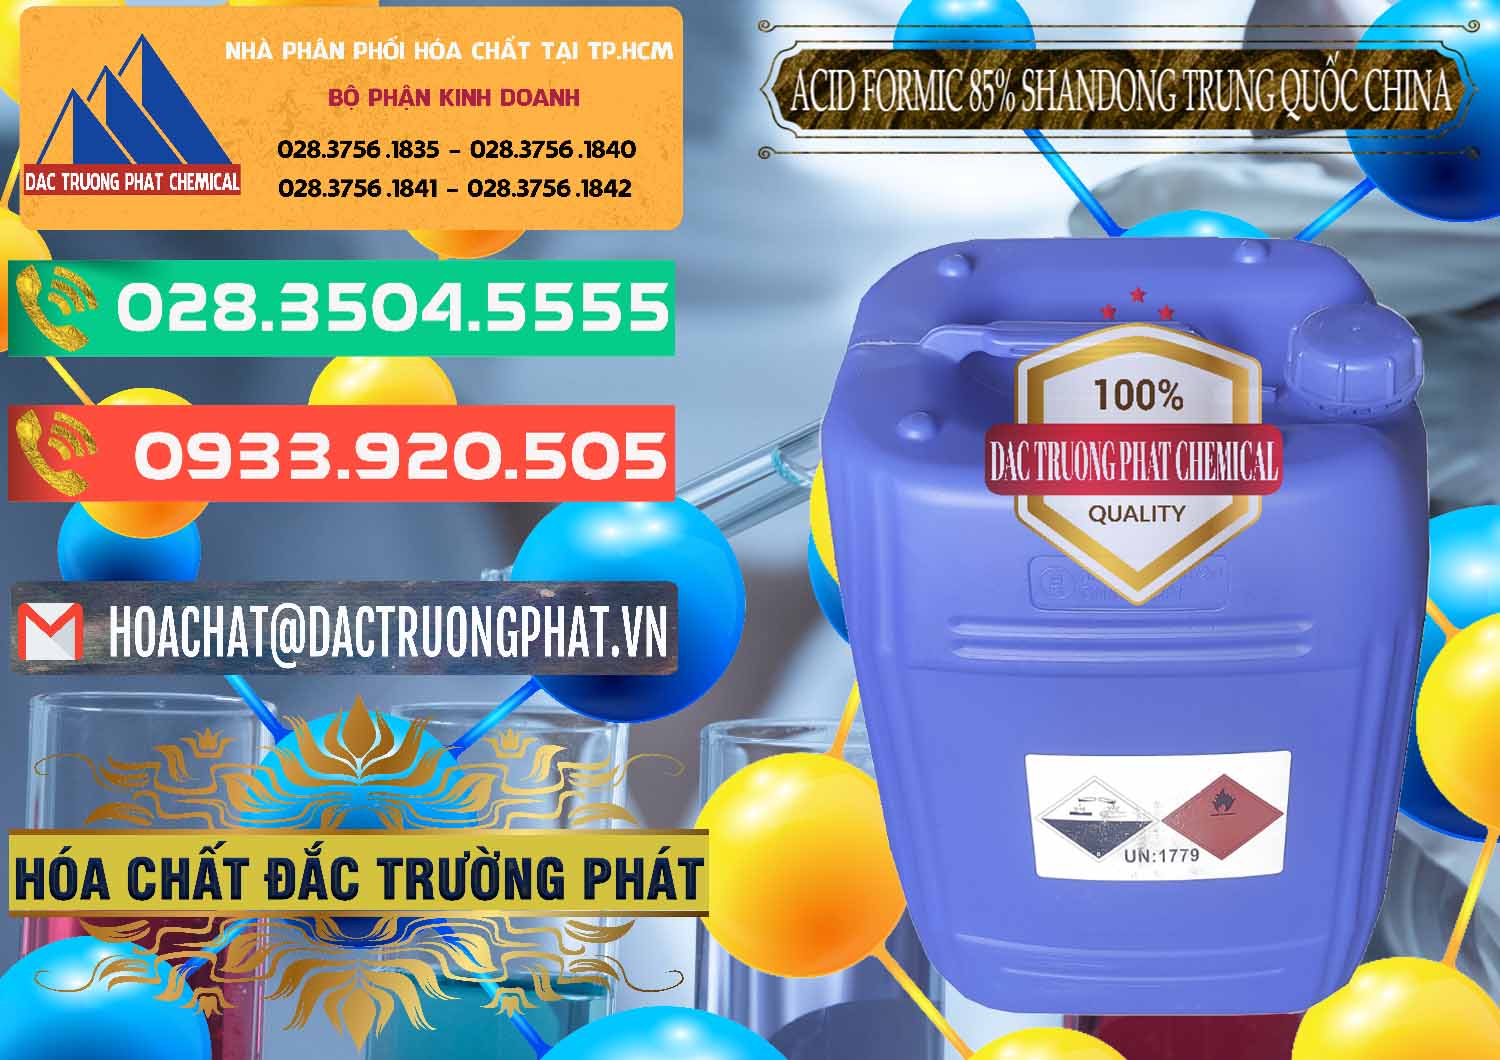 Đơn vị chuyên kinh doanh ( bán ) Acid Formic - Axit Formic 85% Shandong Trung Quốc China - 0235 - Nơi phân phối & nhập khẩu hóa chất tại TP.HCM - congtyhoachat.com.vn